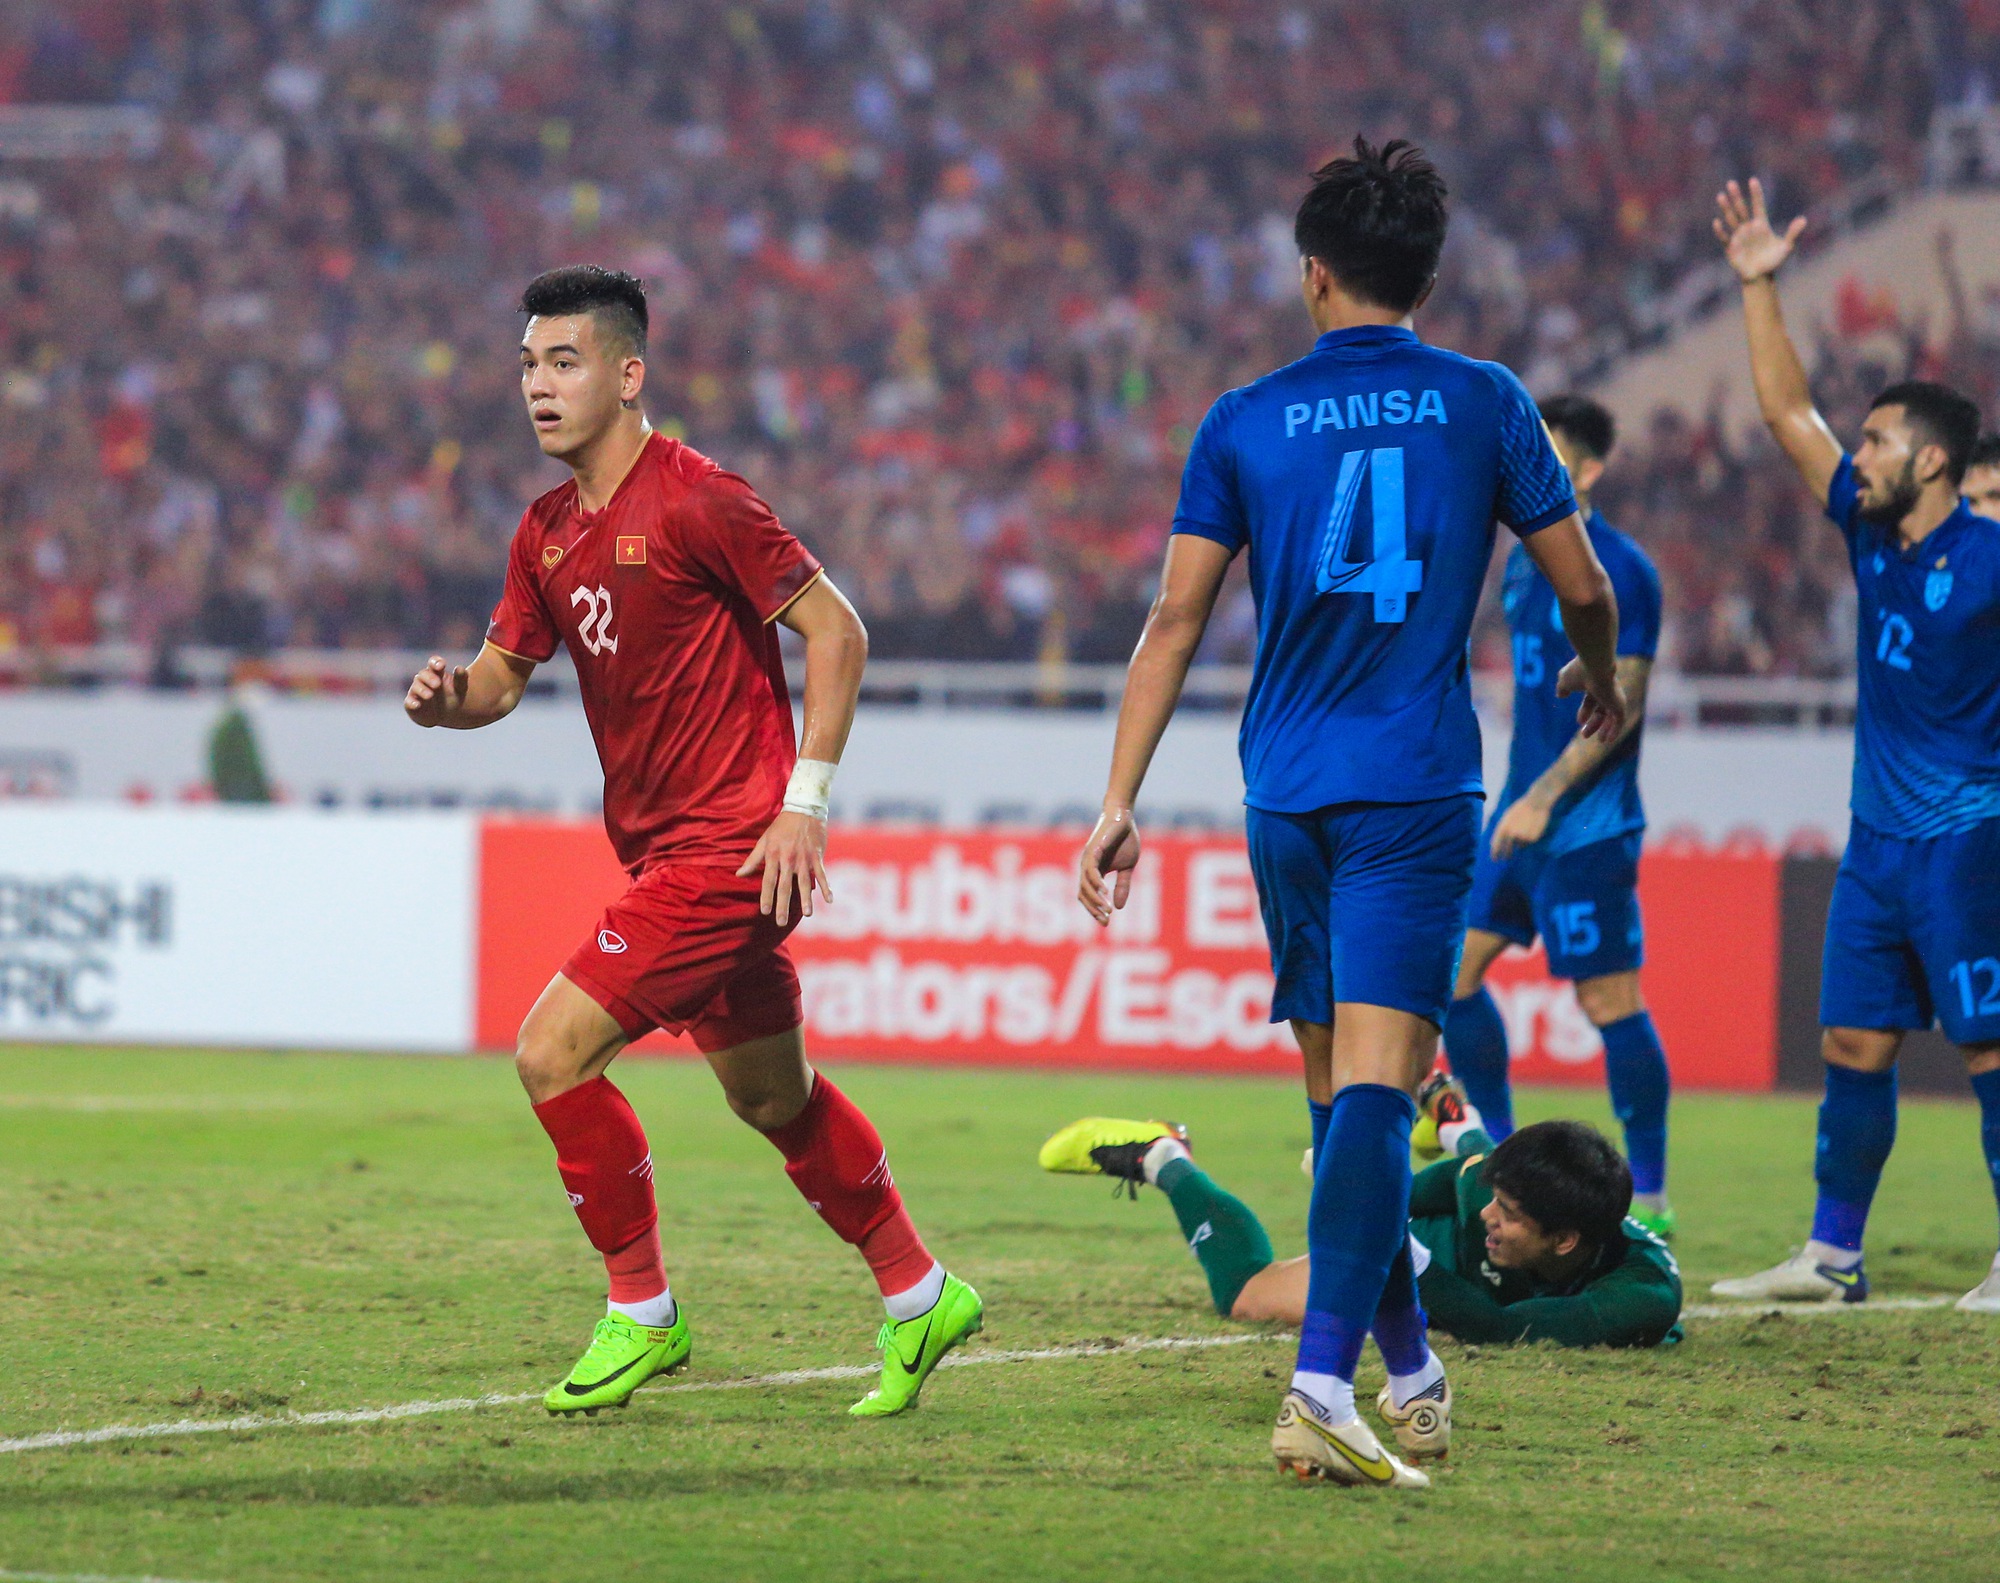 Tiến Linh tiếc nuối khi bỏ lỡ cú đúp vào lưới Thái Lan, Tuấn Hải vẫn 'kém duyên' với AFF Cup - Ảnh 2.